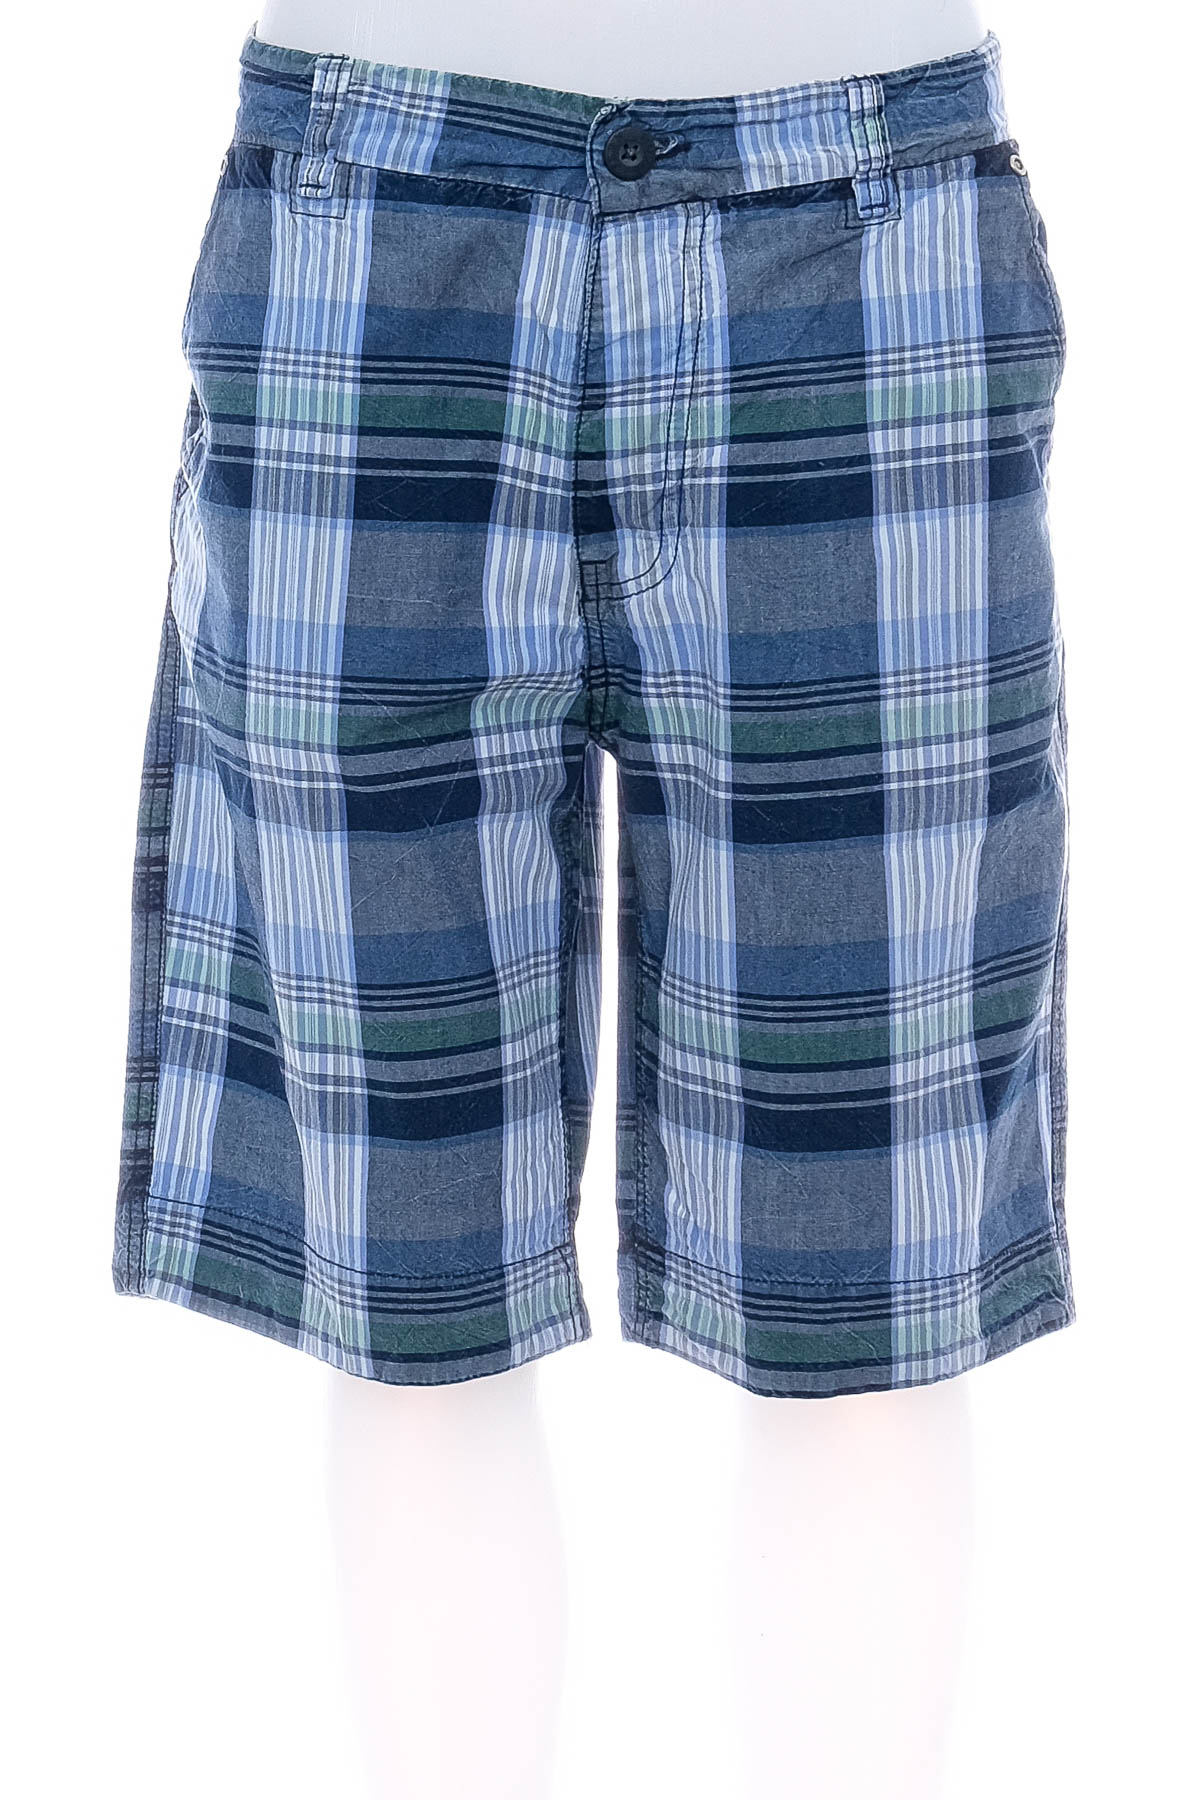 Men's shorts - FSBN - 0